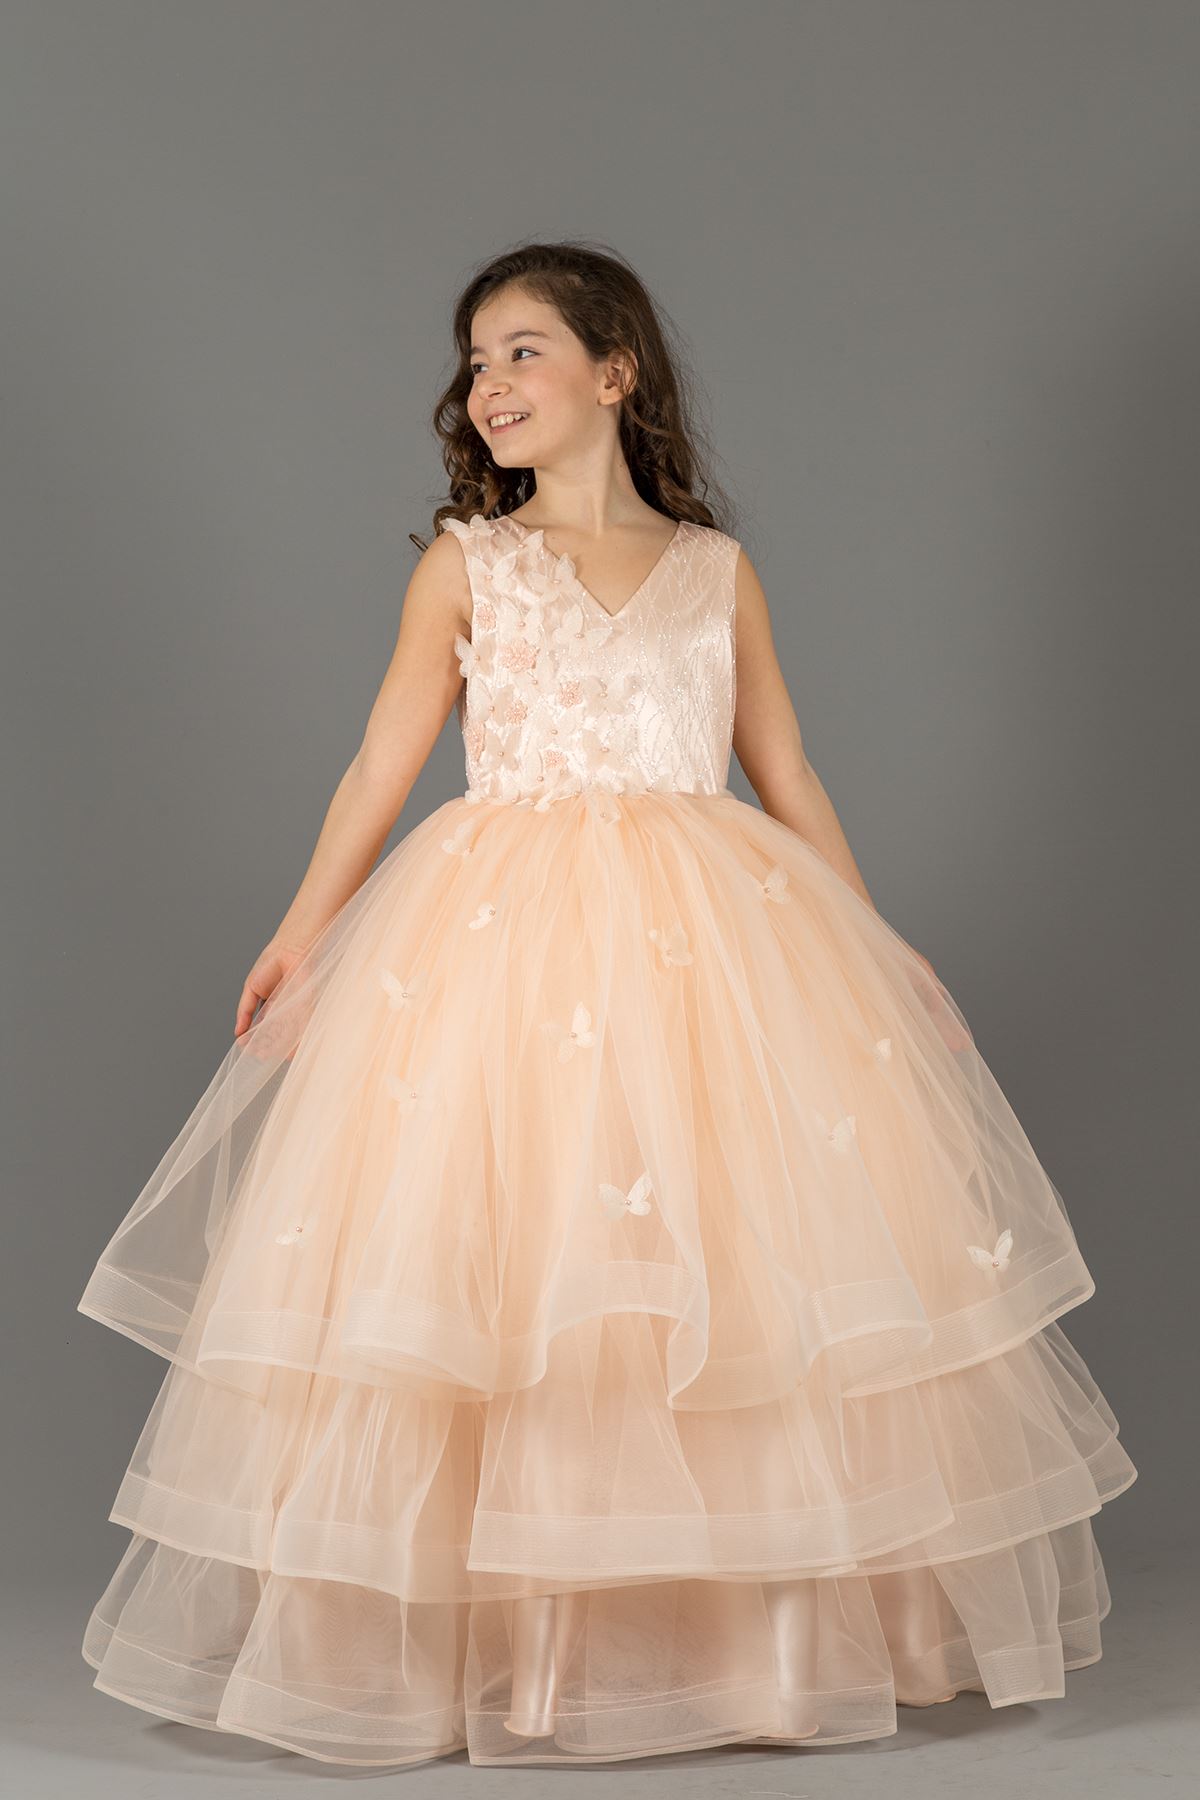 שמלת הערב של הבחורה הפלומתית 586 סלמון עם חצאיות שכבות, פרח תלת ממדי,